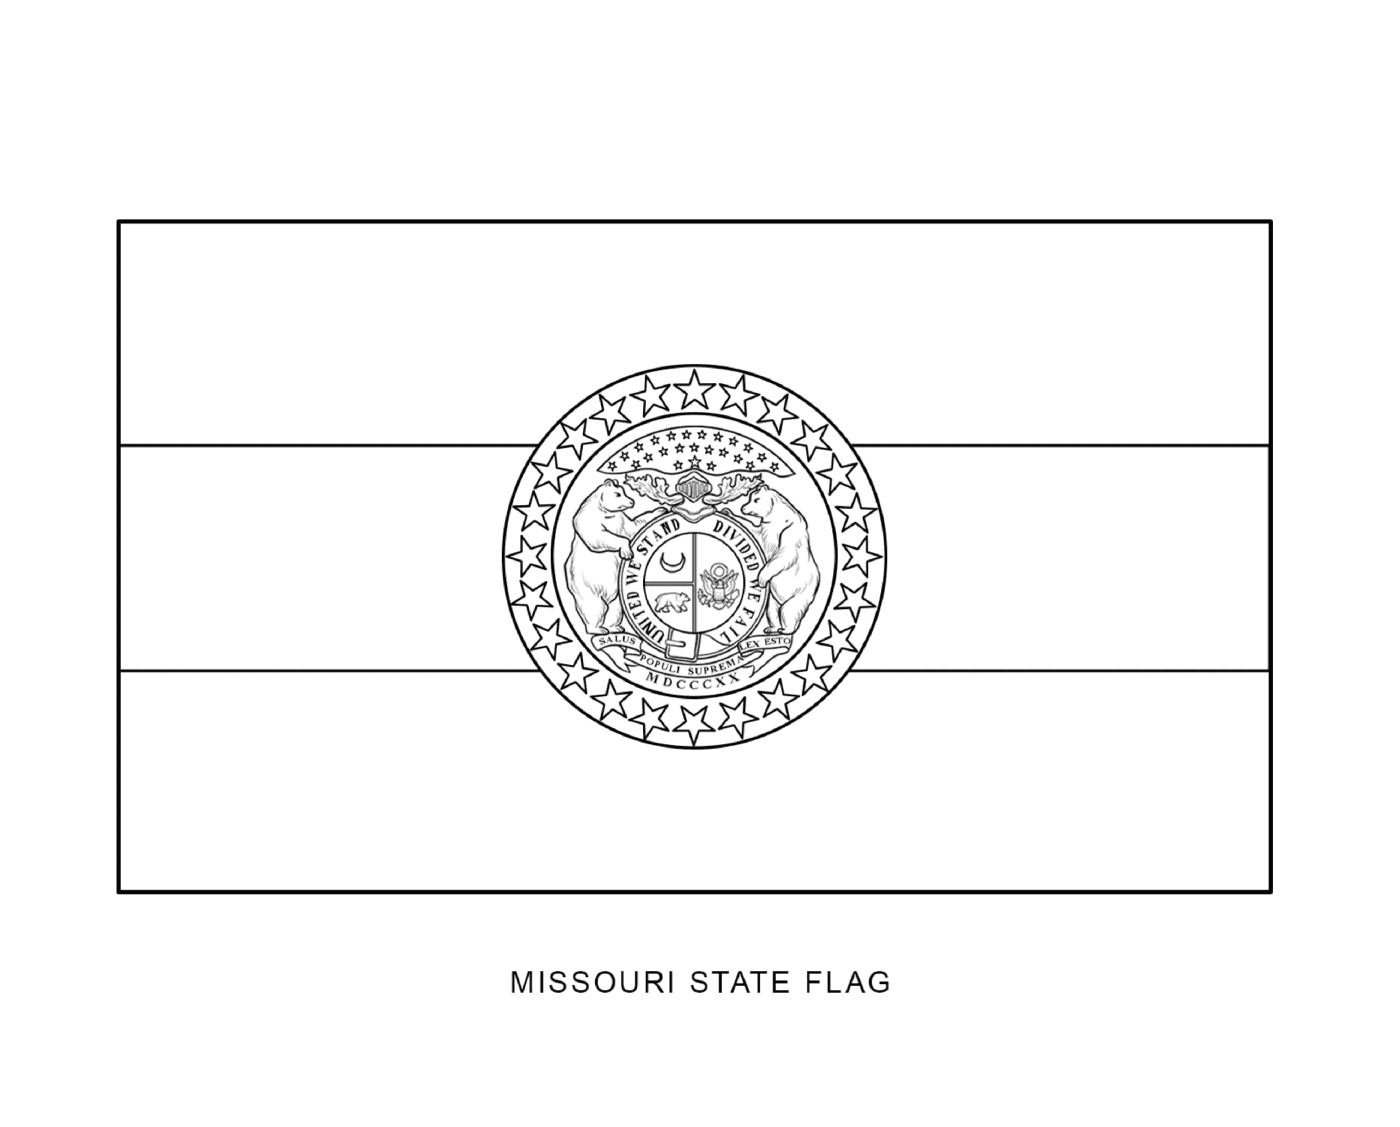  Missouri Staatsflagge in schwarzer Tinte gezeichnet 